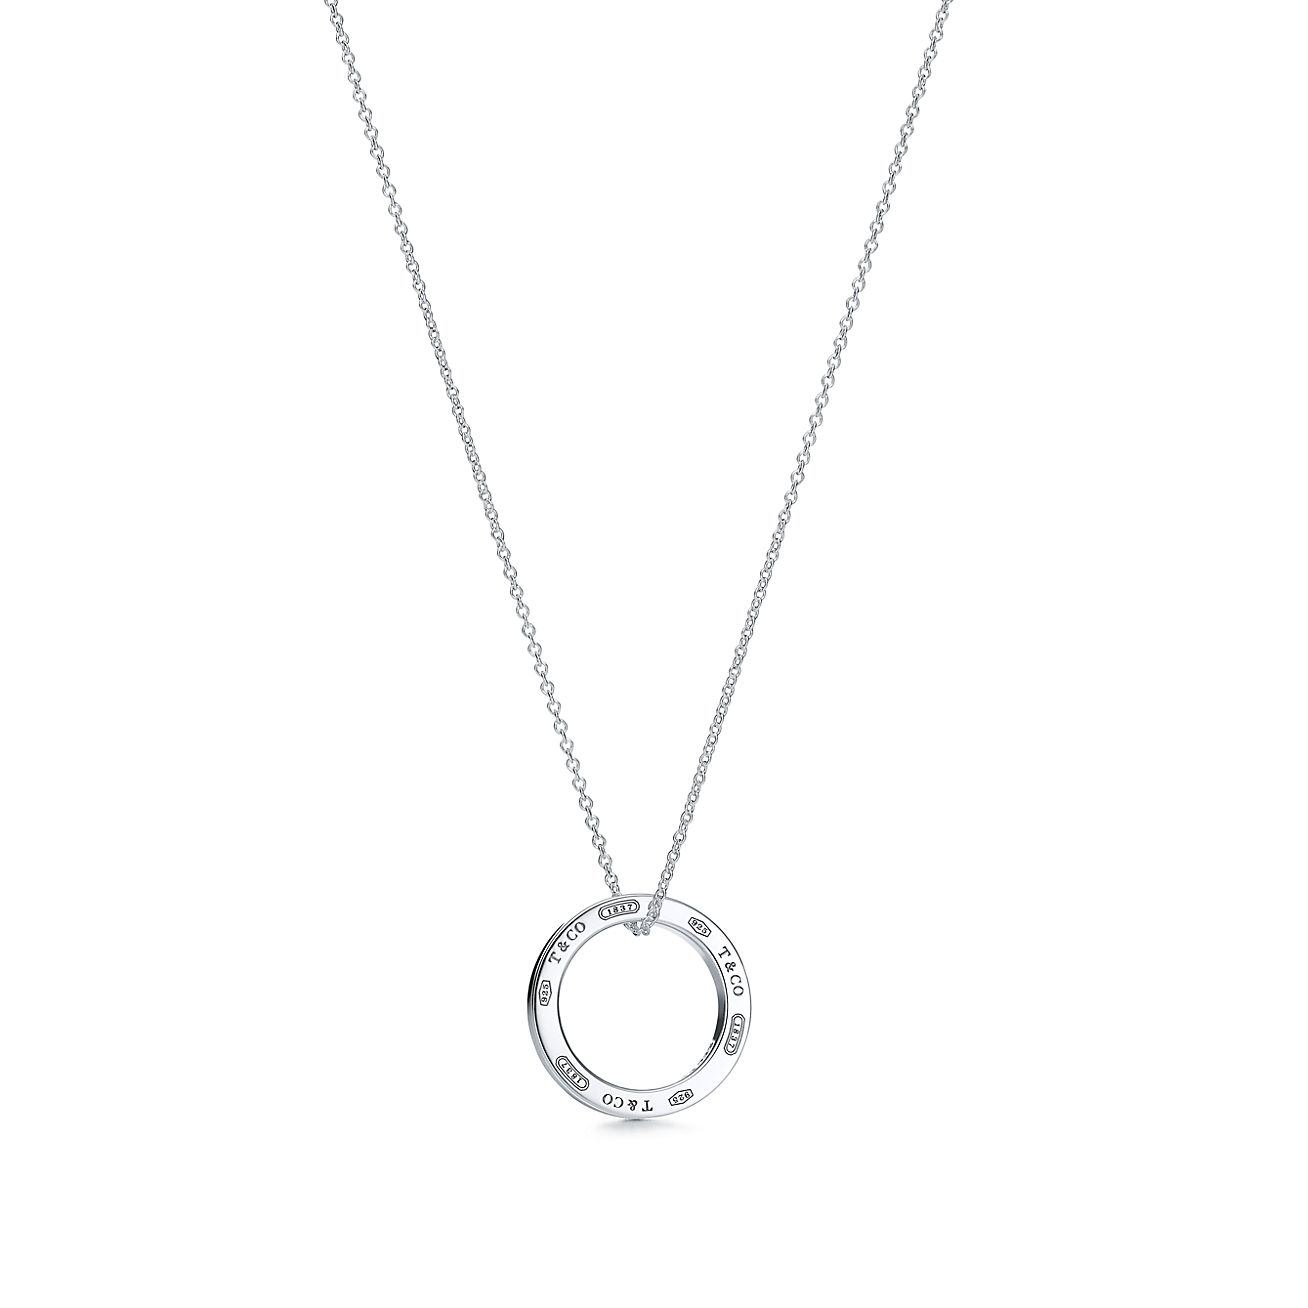 silver chain silver pendant